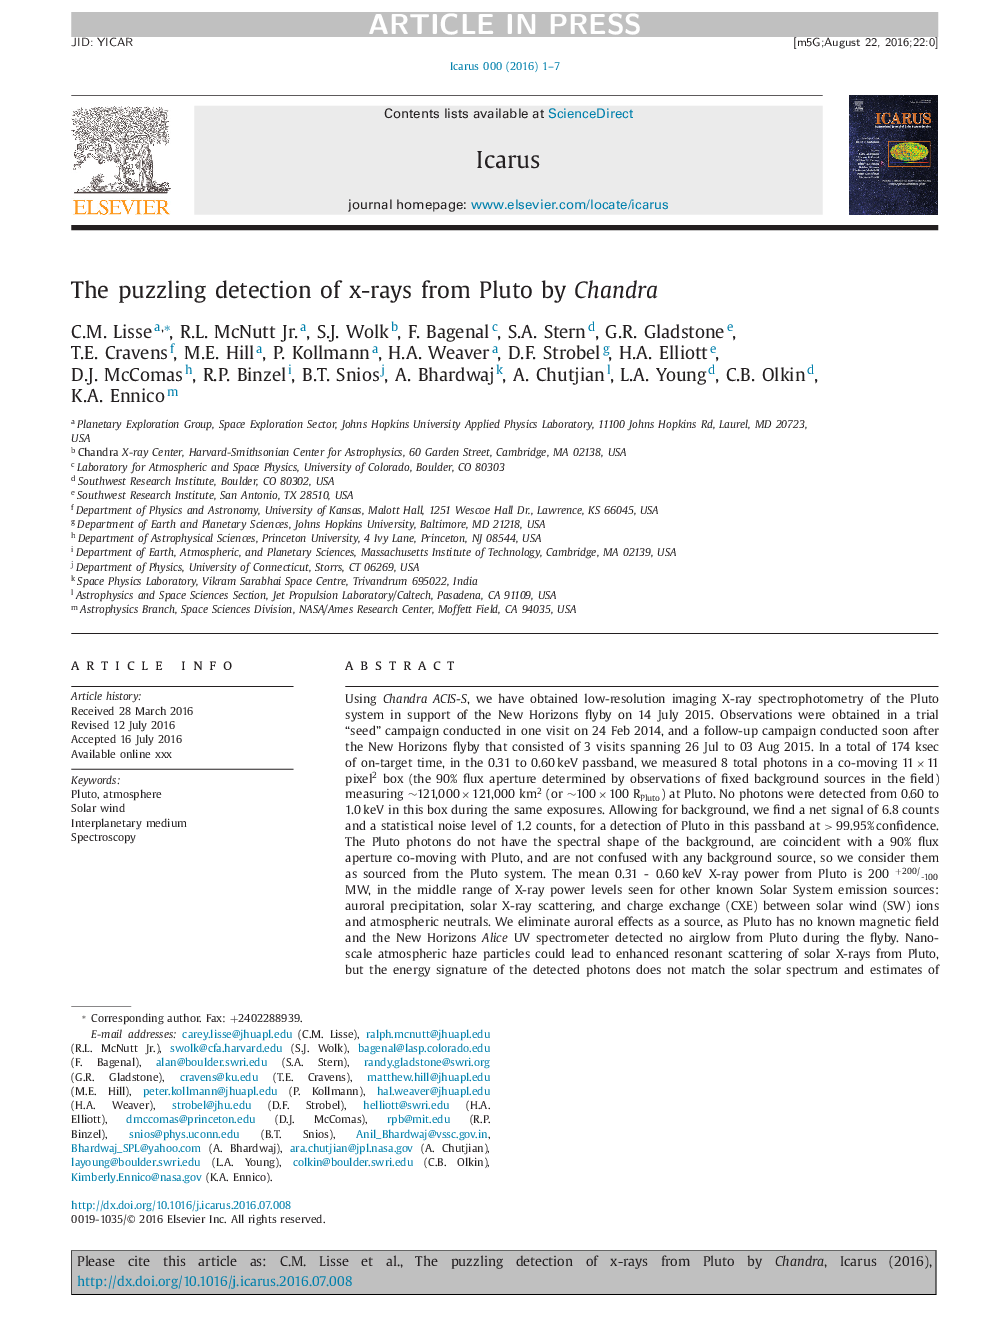 تشخیص غم انگیز اشعه ایکس از پلوتو توسط چاندرا 